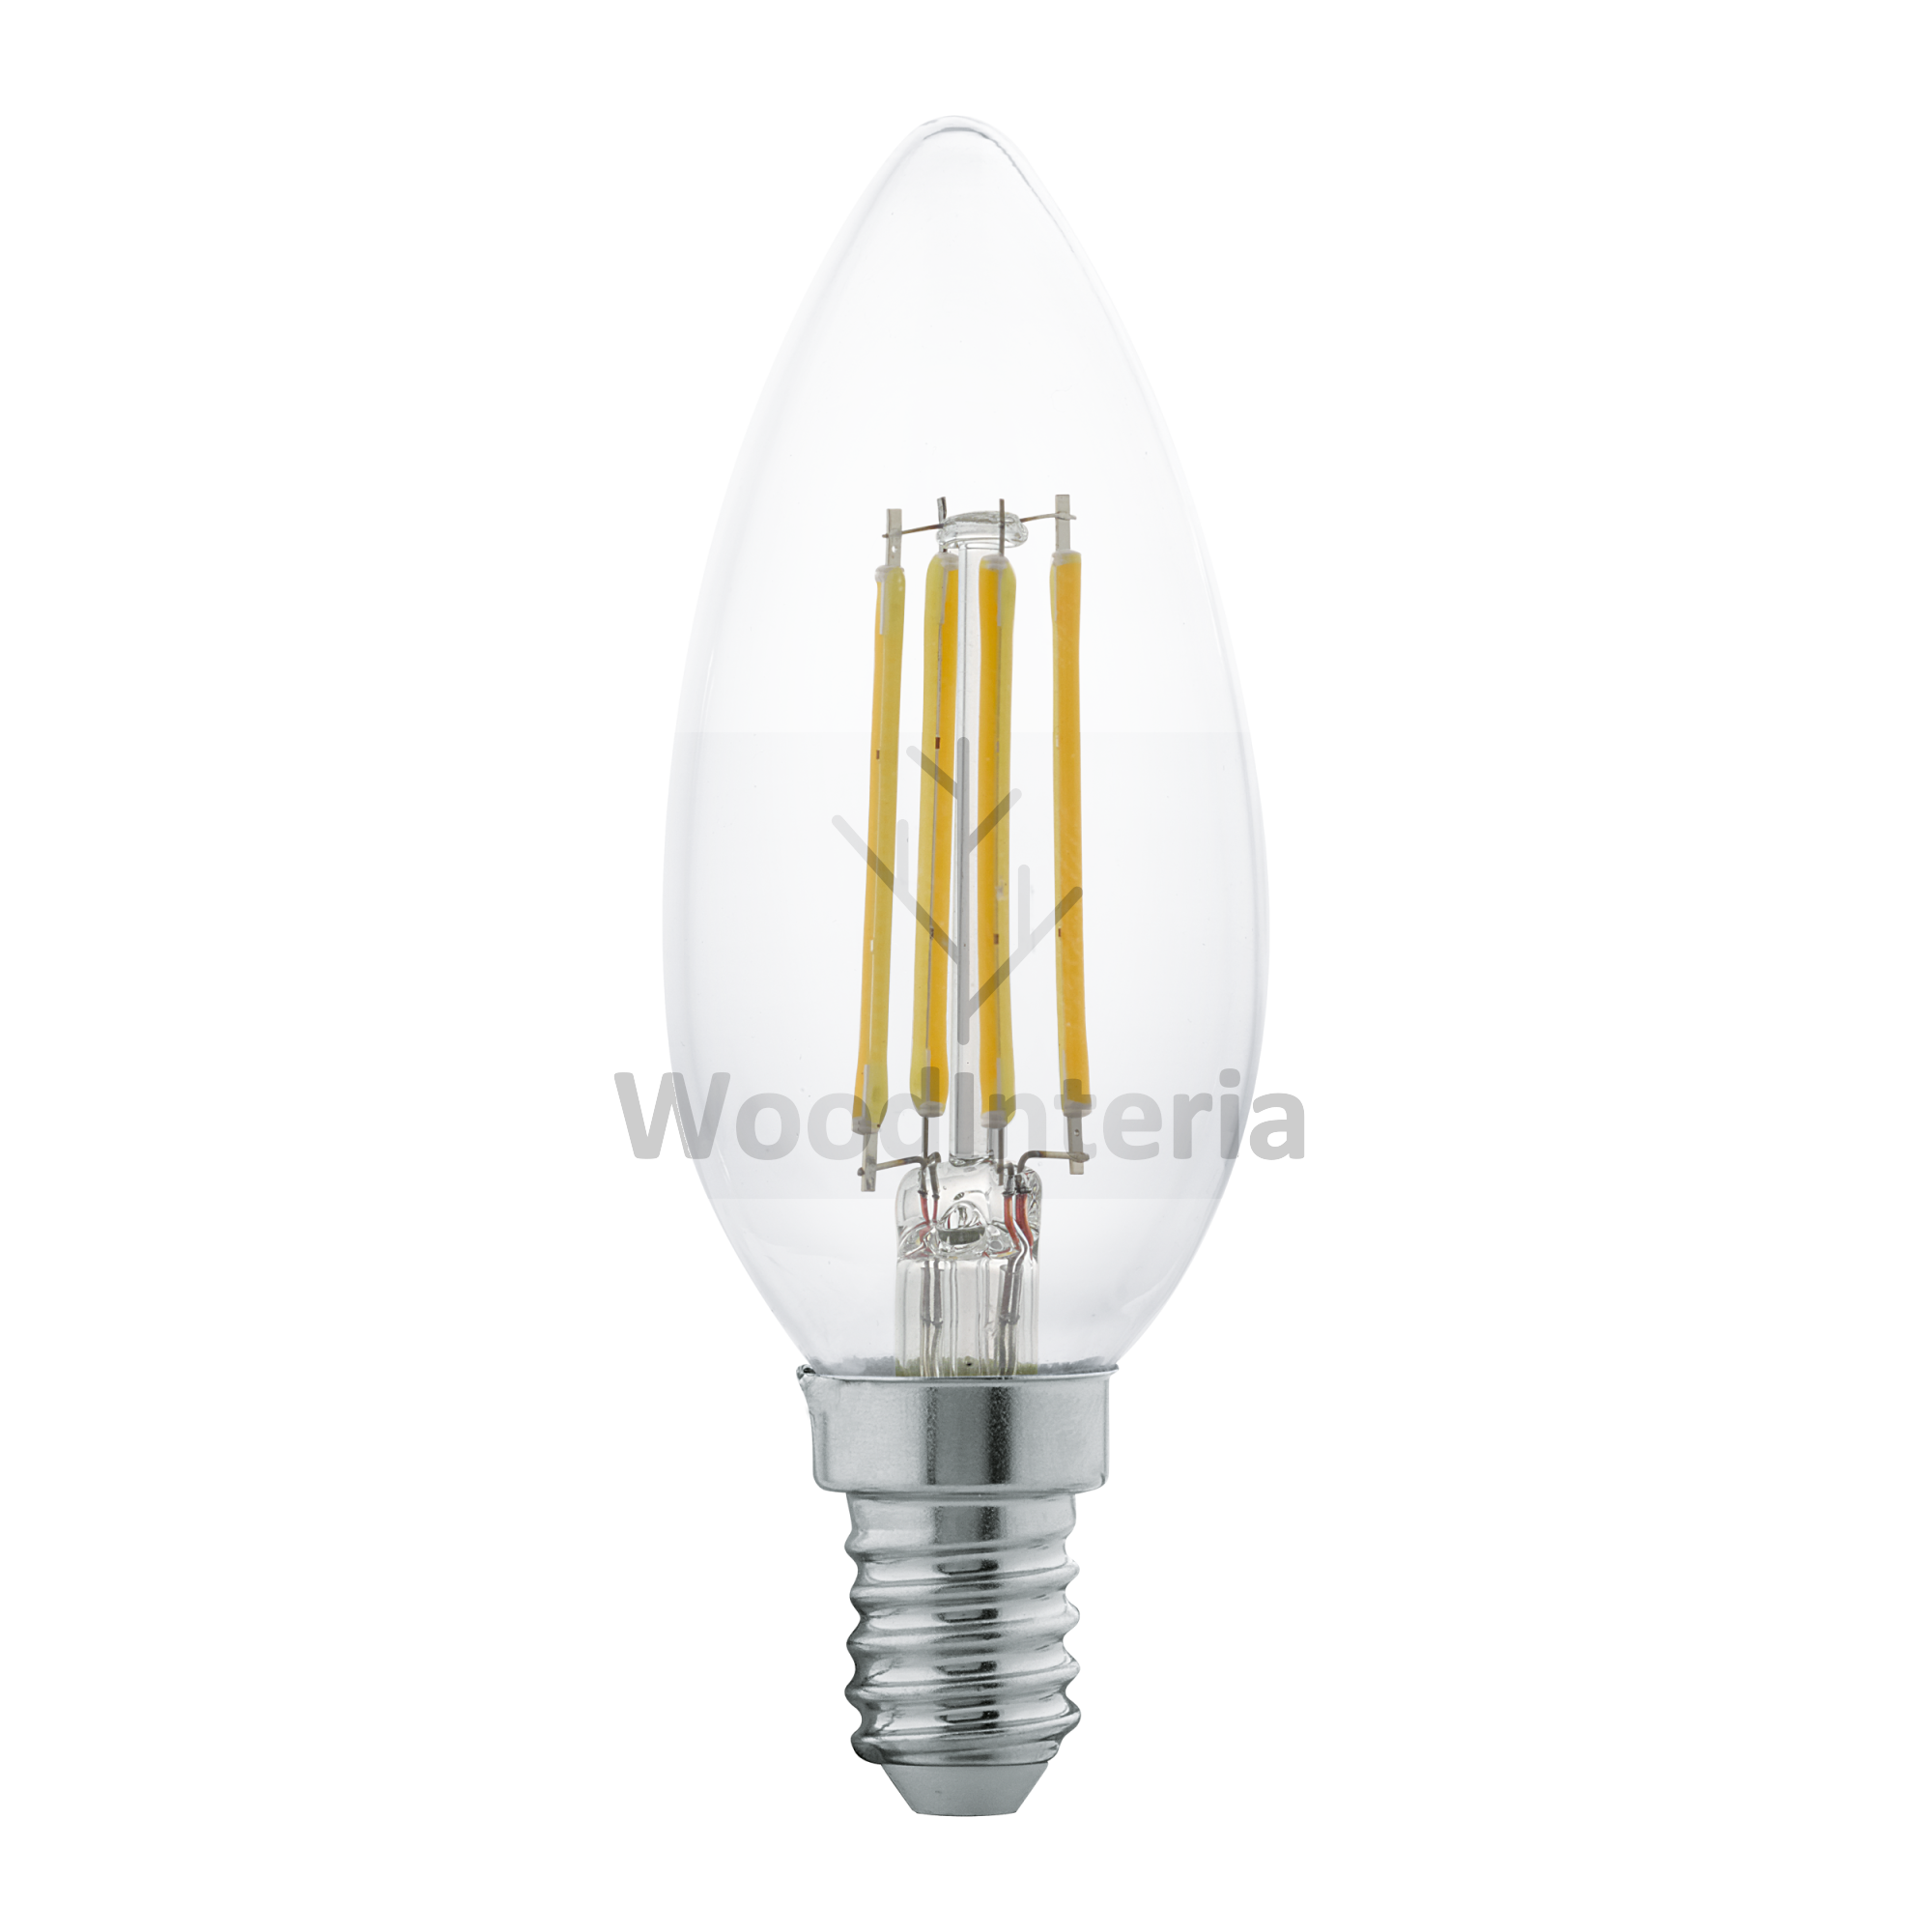 фото лампочка clean bulb #9 в скандинавском интерьере лофт эко | WoodInteria